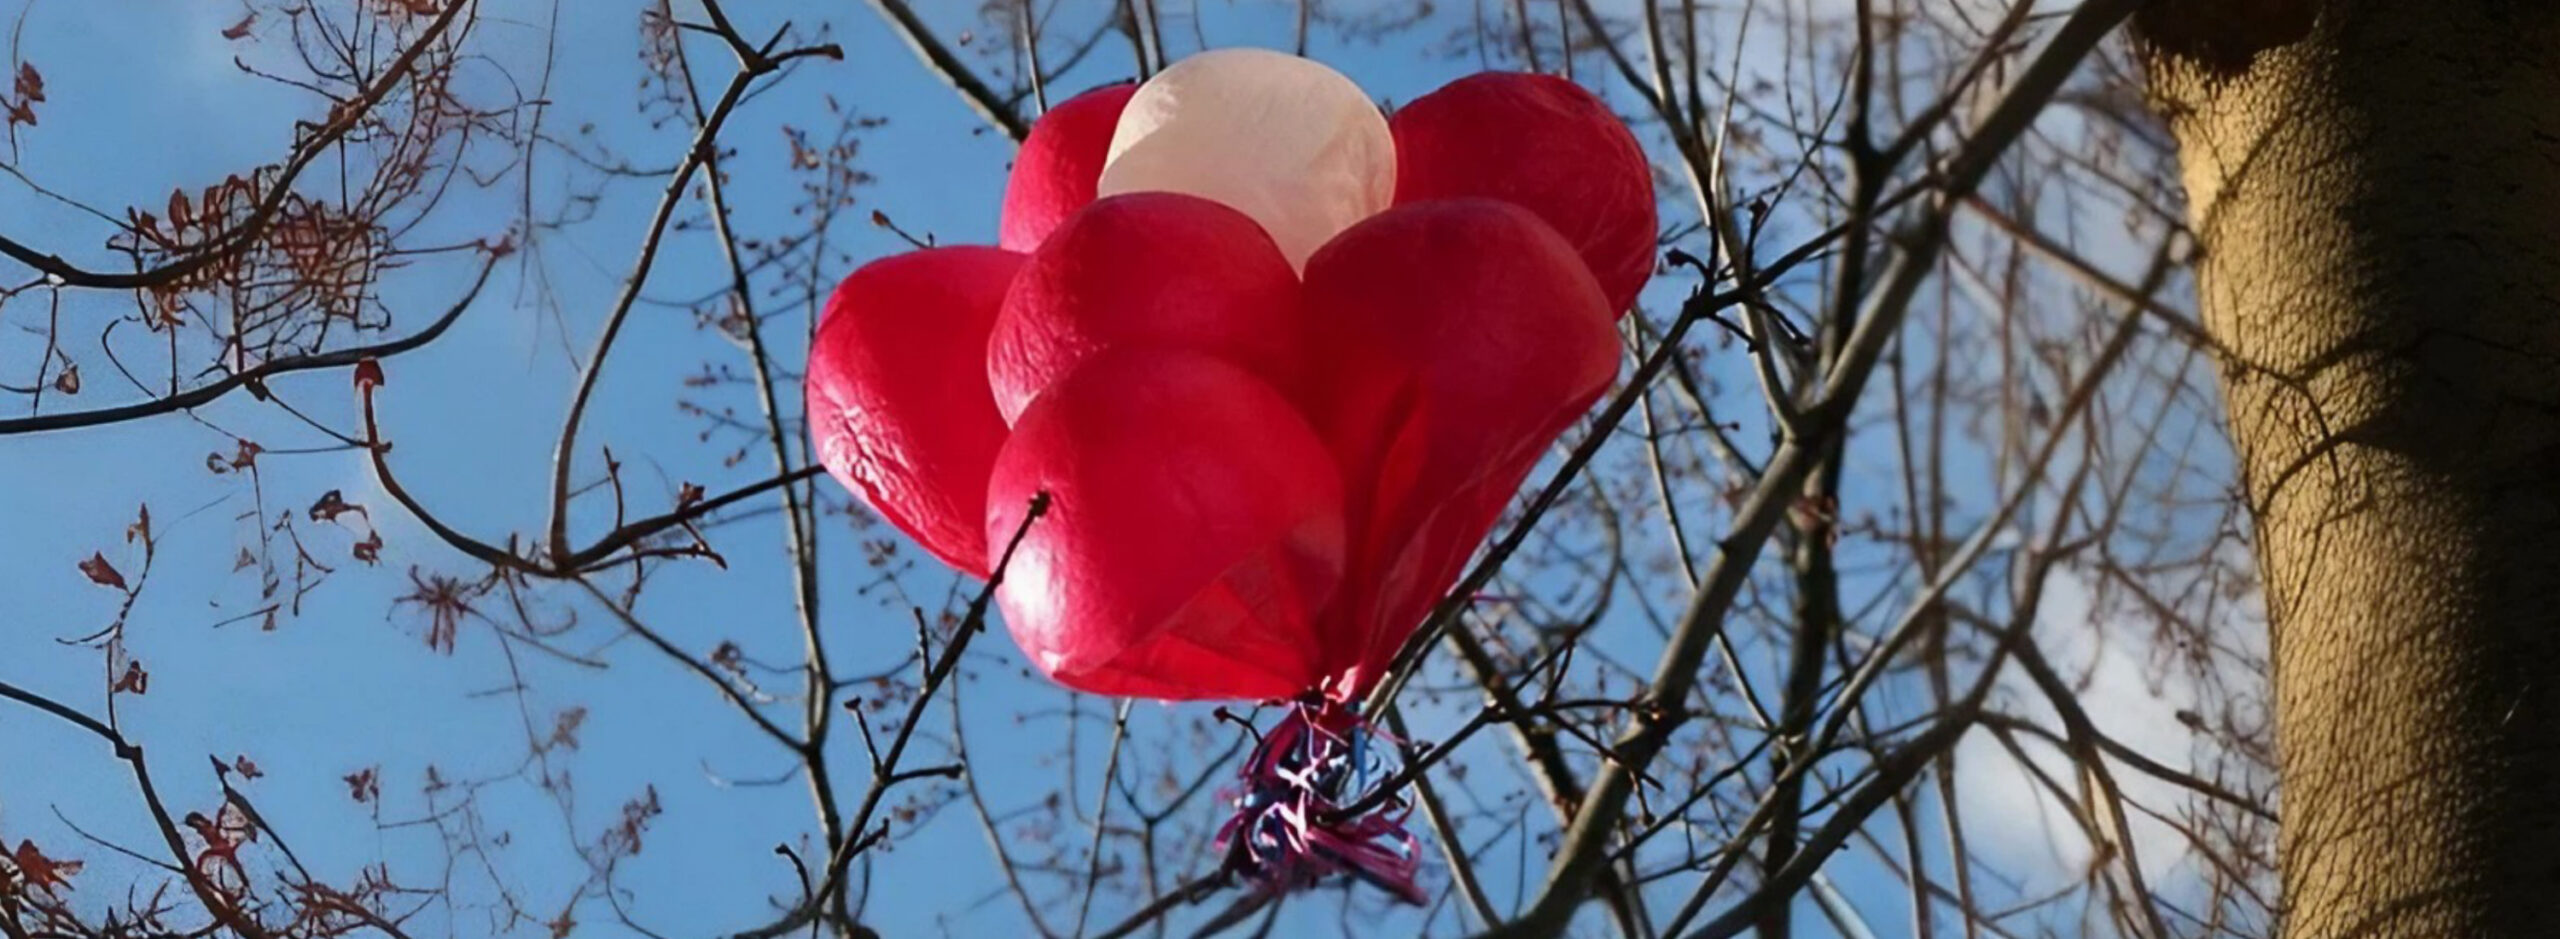 Umweltverschmutzung durch Luftballons, Ballons im Gebüsch, Alternative zu Luftballons